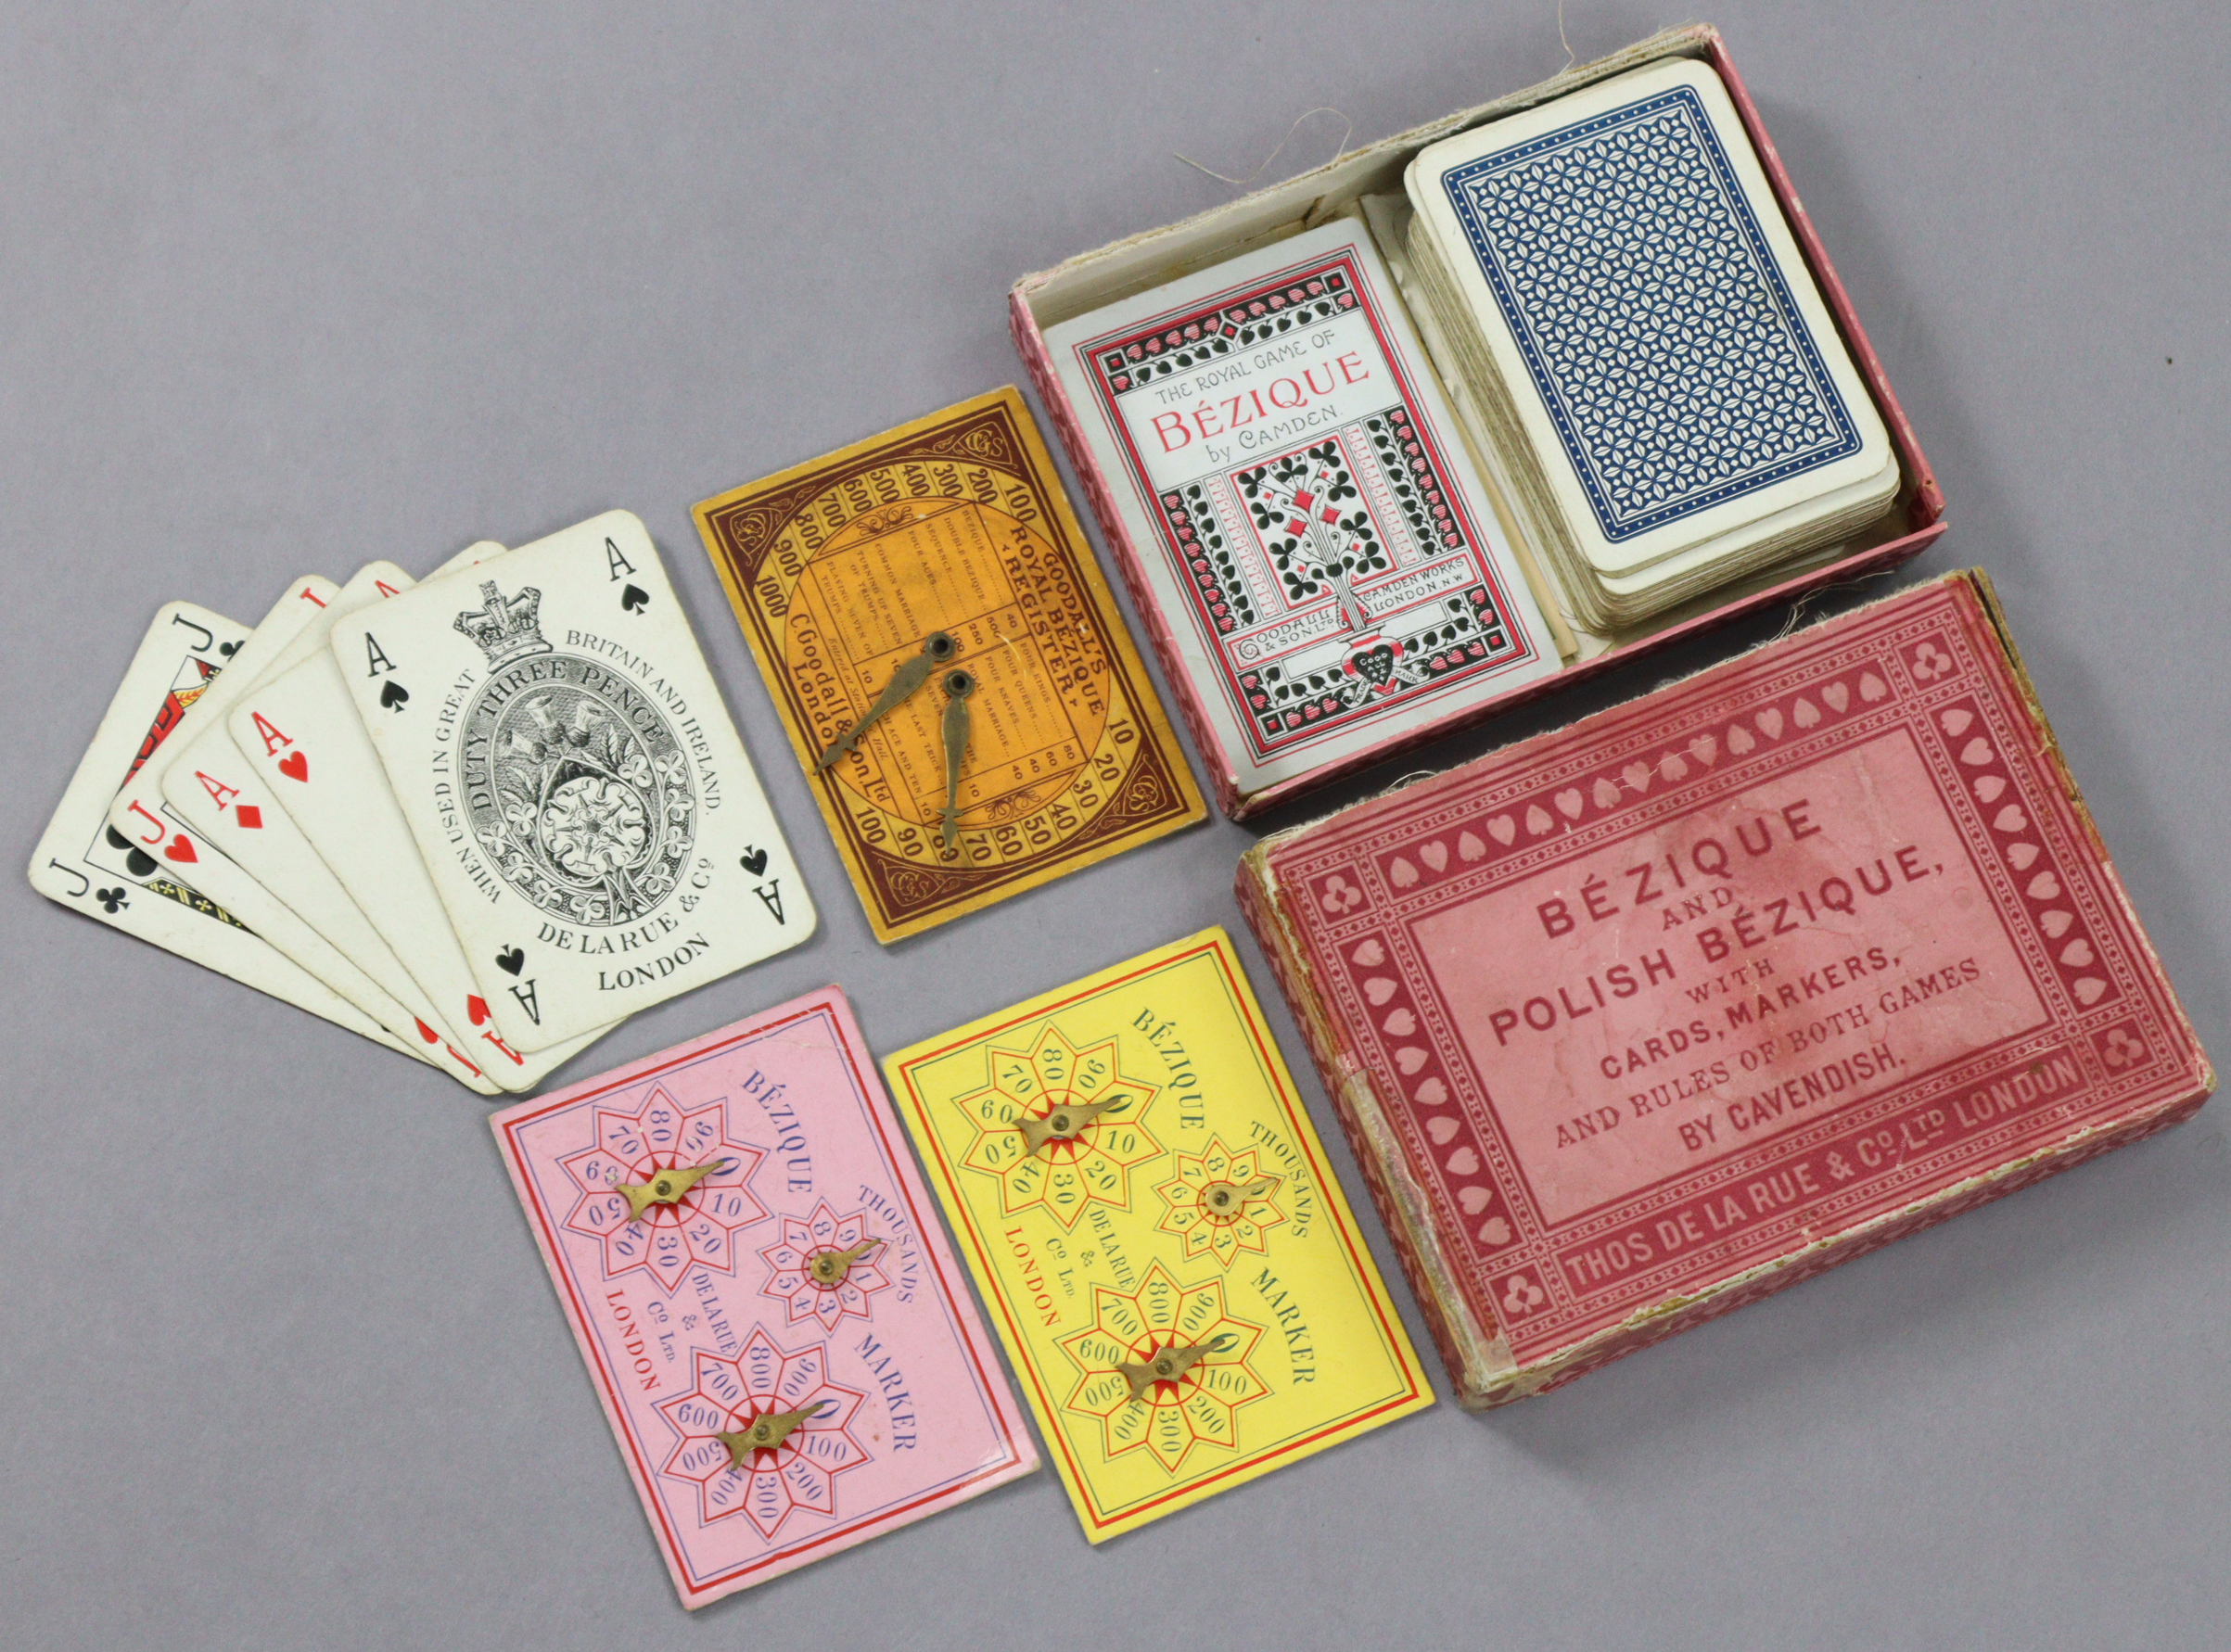 A Thos. De La Rue & Co. of London "Bezique And Polish Bezique" card game, boxed.